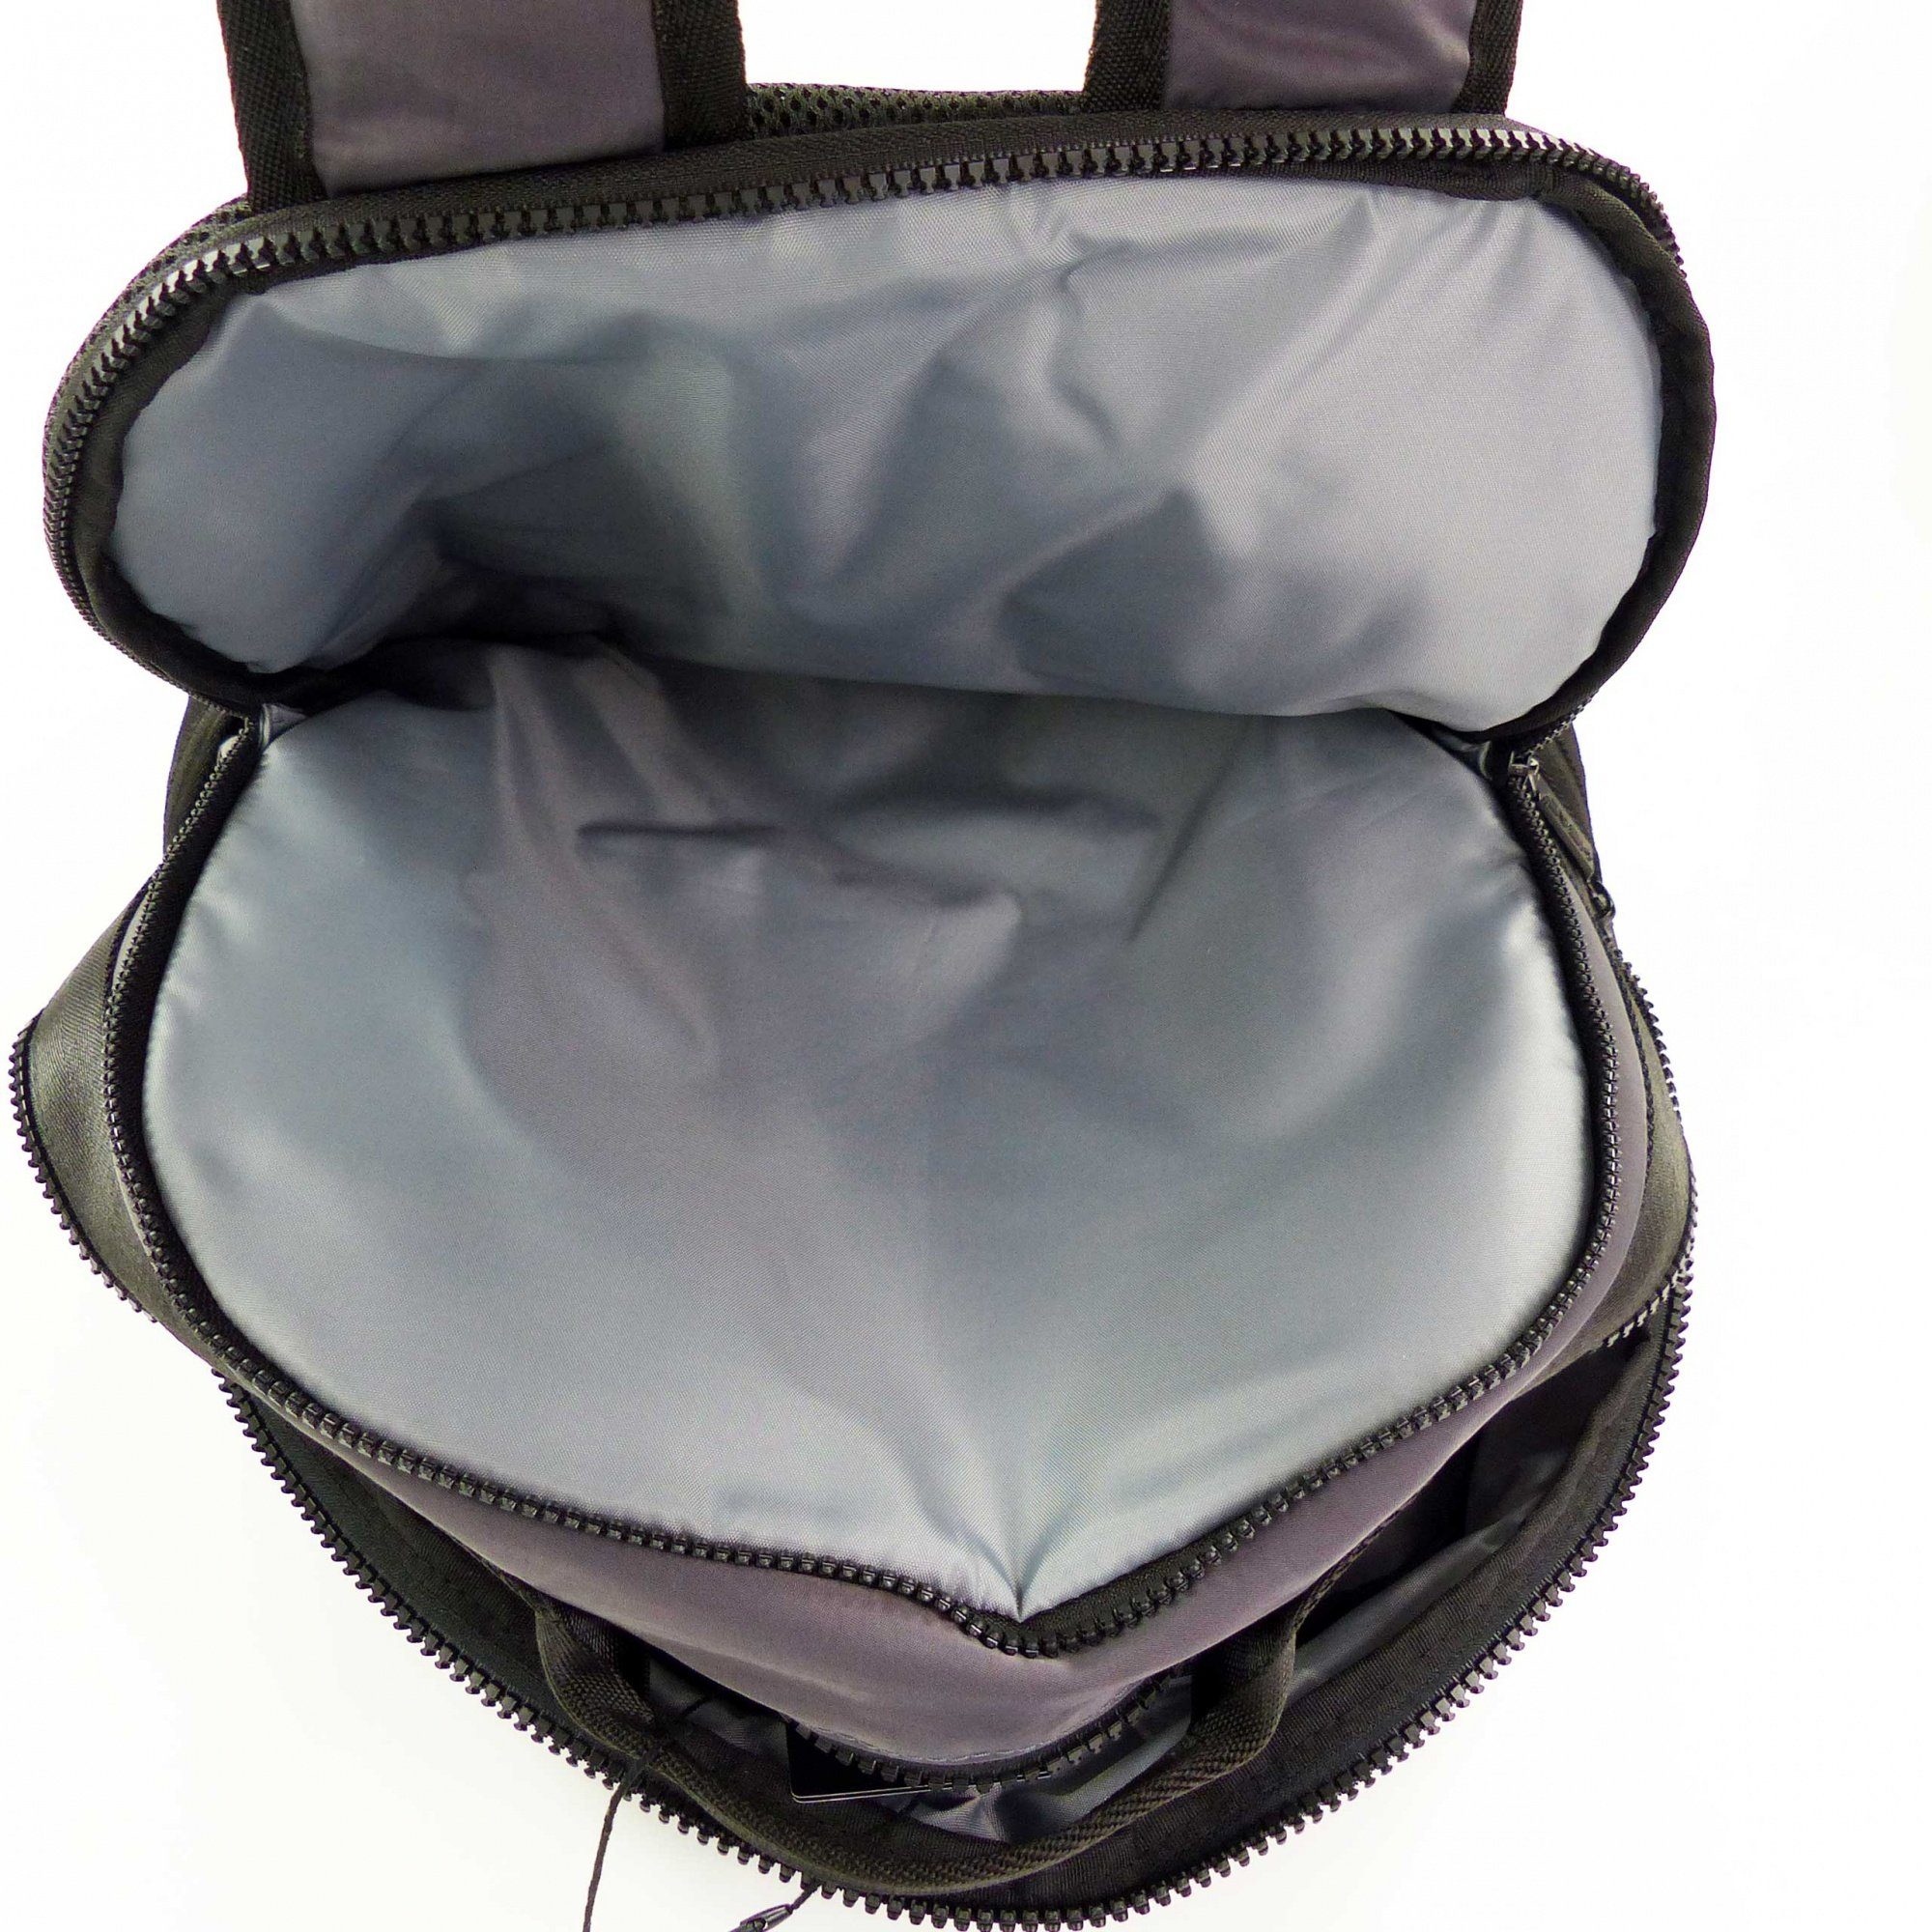 Smash Dunkelgrau 2 Backpack Head Compartments Rucksack